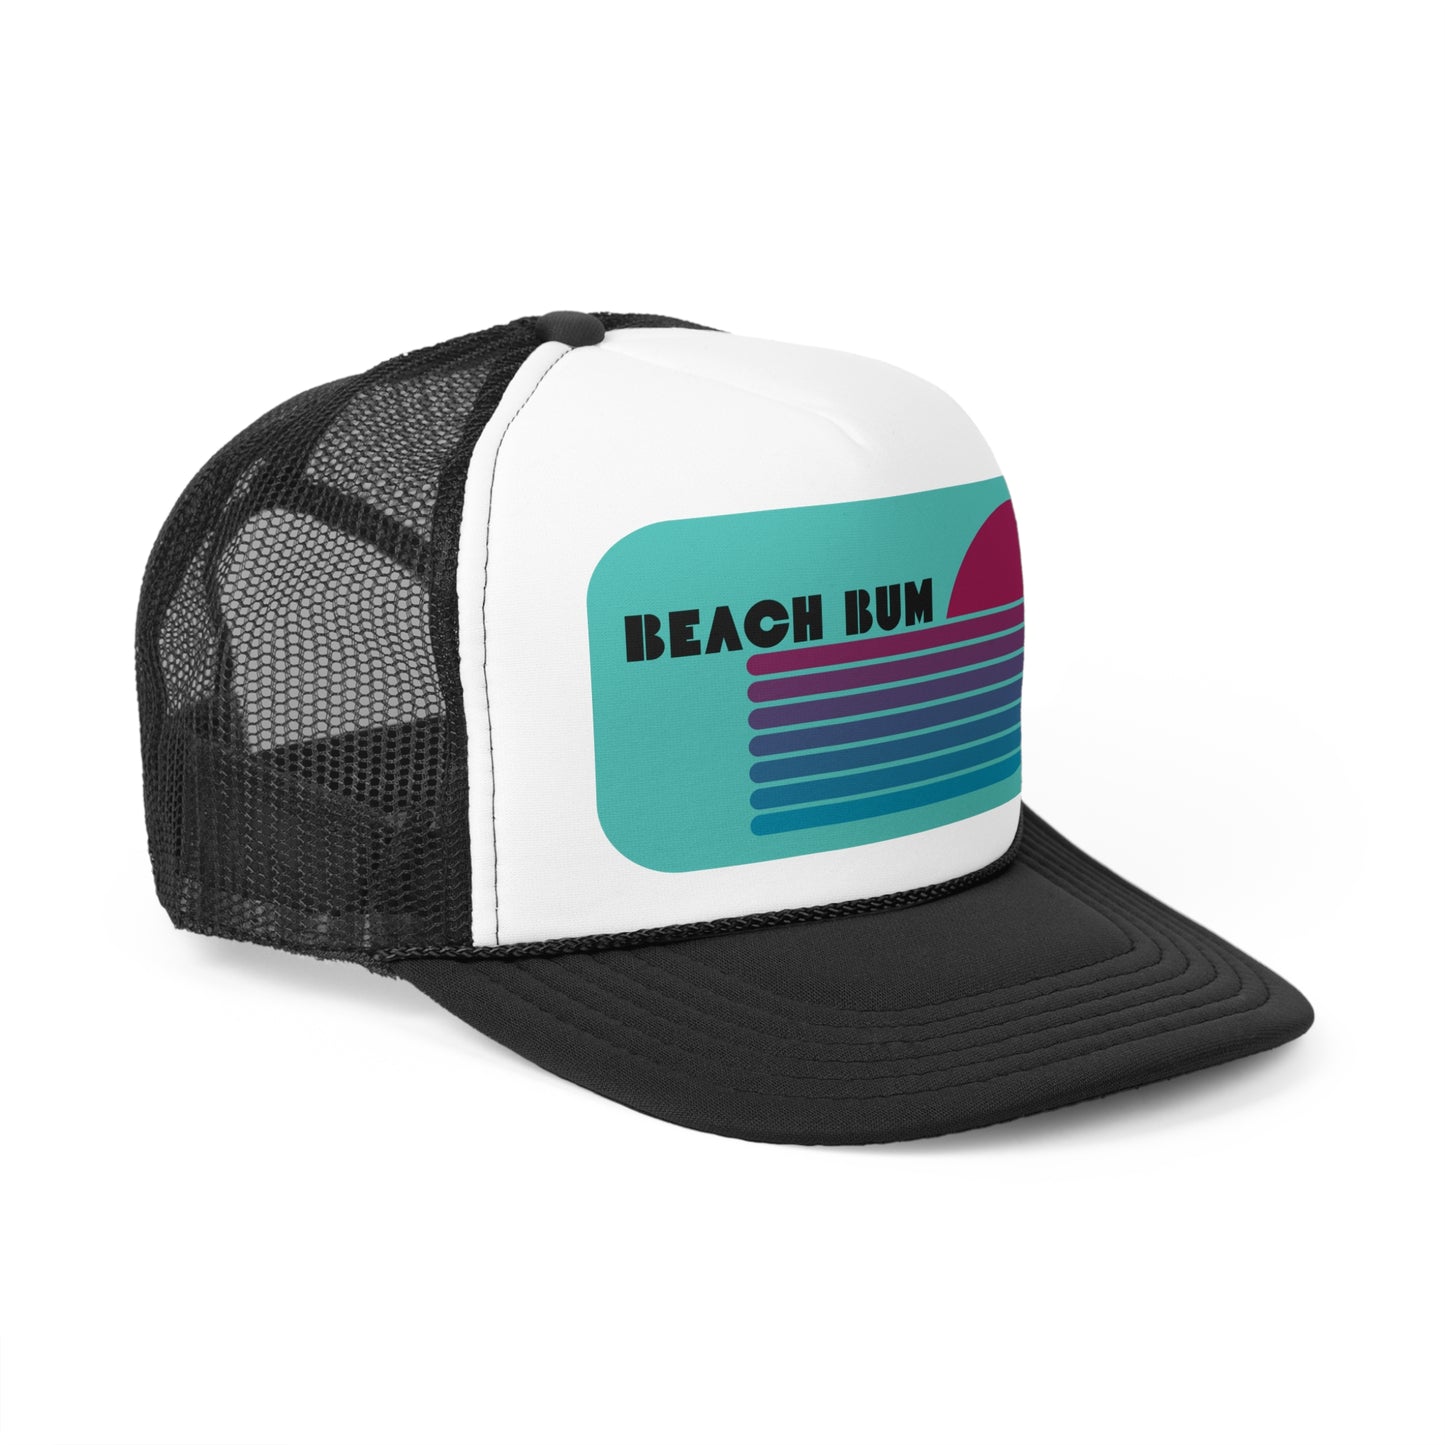 Trucker Hat Retro Design Minimalist Trucker Cap Beach Bum Abstract Trucker Hat Vintage Style Trucker Hat For The Beach Hat